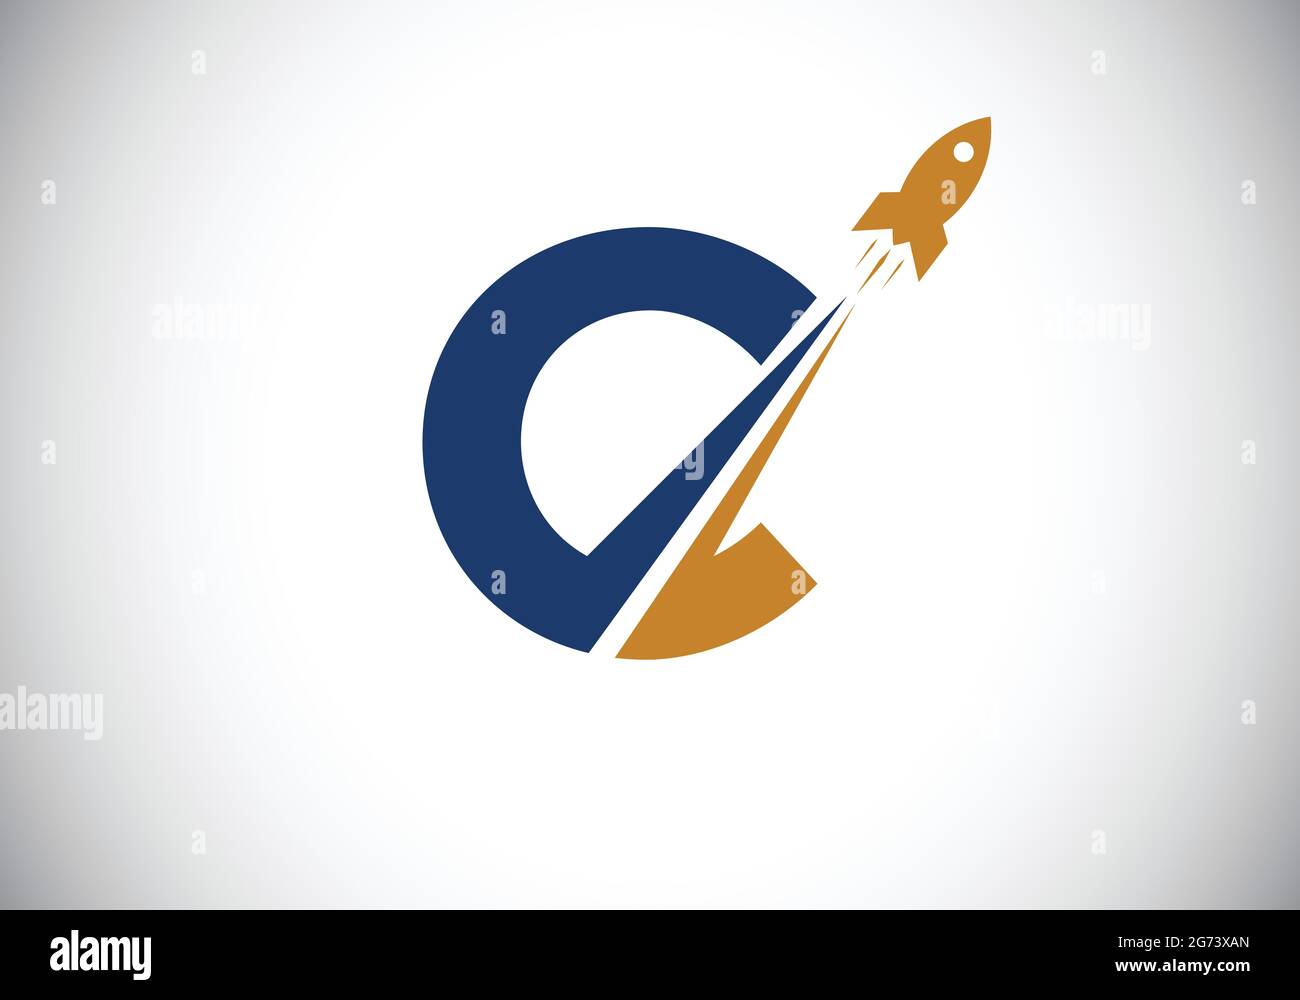 Initial C Monogramm Buchstaben Alphabet mit einem Rocket Logo Design. Raketensymbol. Schrift-Emblem. Moderner Vektor-Logotyp für Geschäfts- und Firmenidentität. Stock Vektor